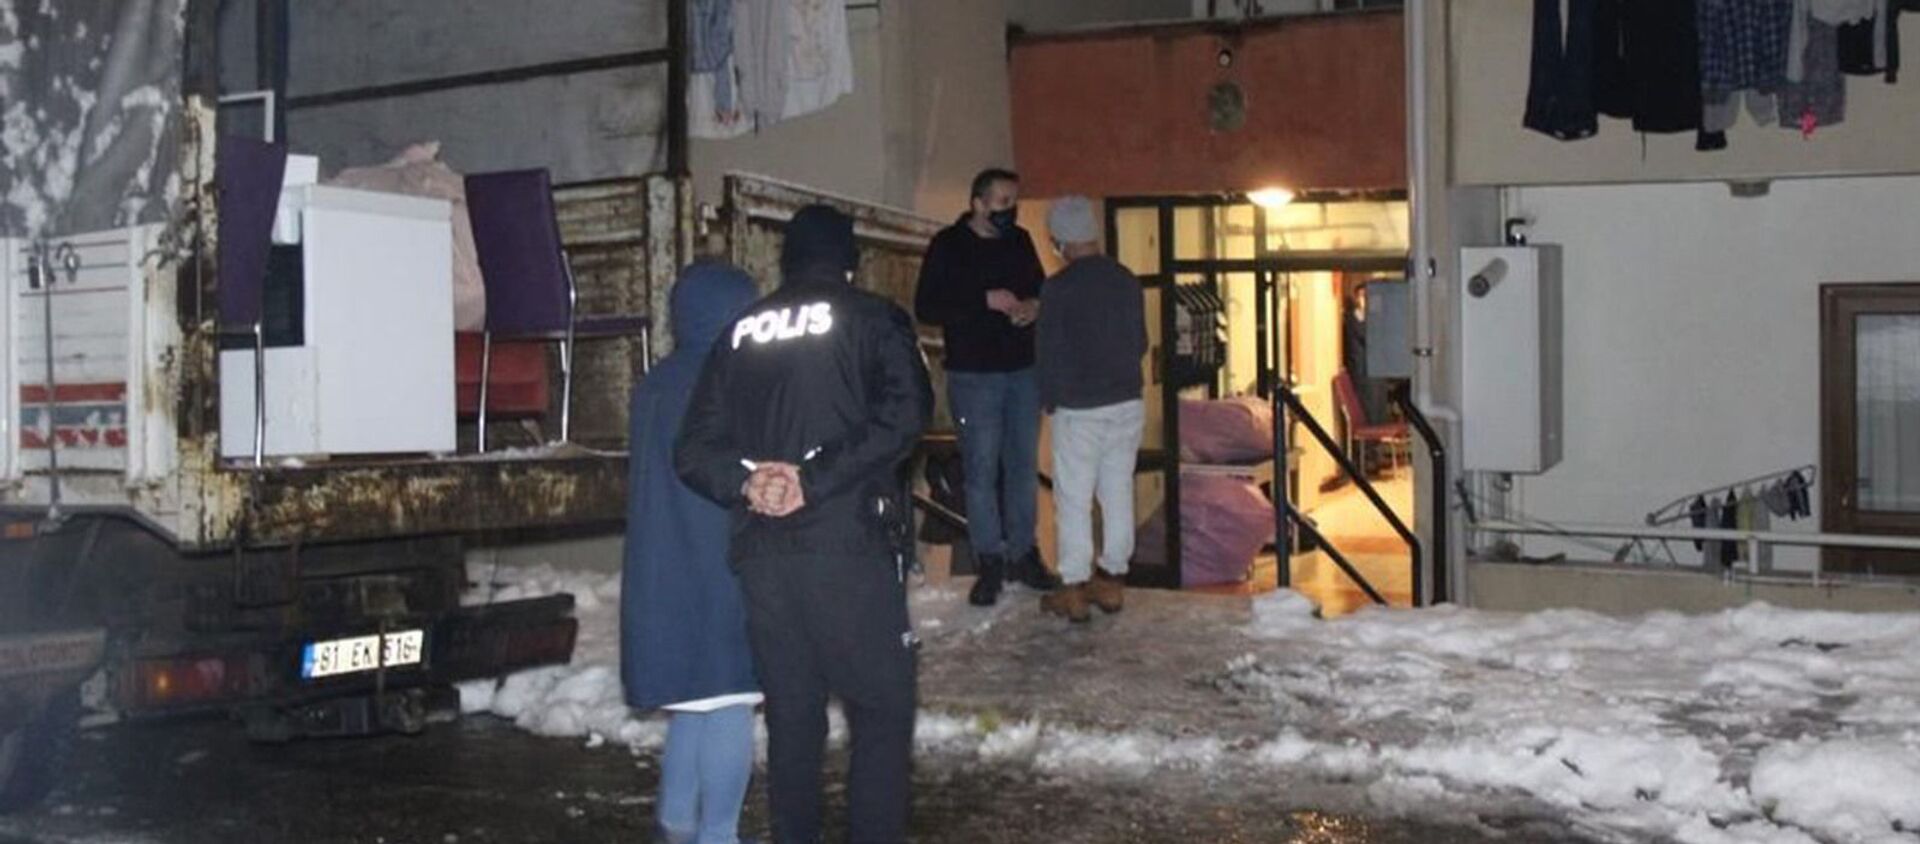 Kocaeli'de kadın cinayeti: Eşyalarını almaya gelen eski sevgilisini öldürdü - Sputnik Türkiye, 1920, 15.02.2021